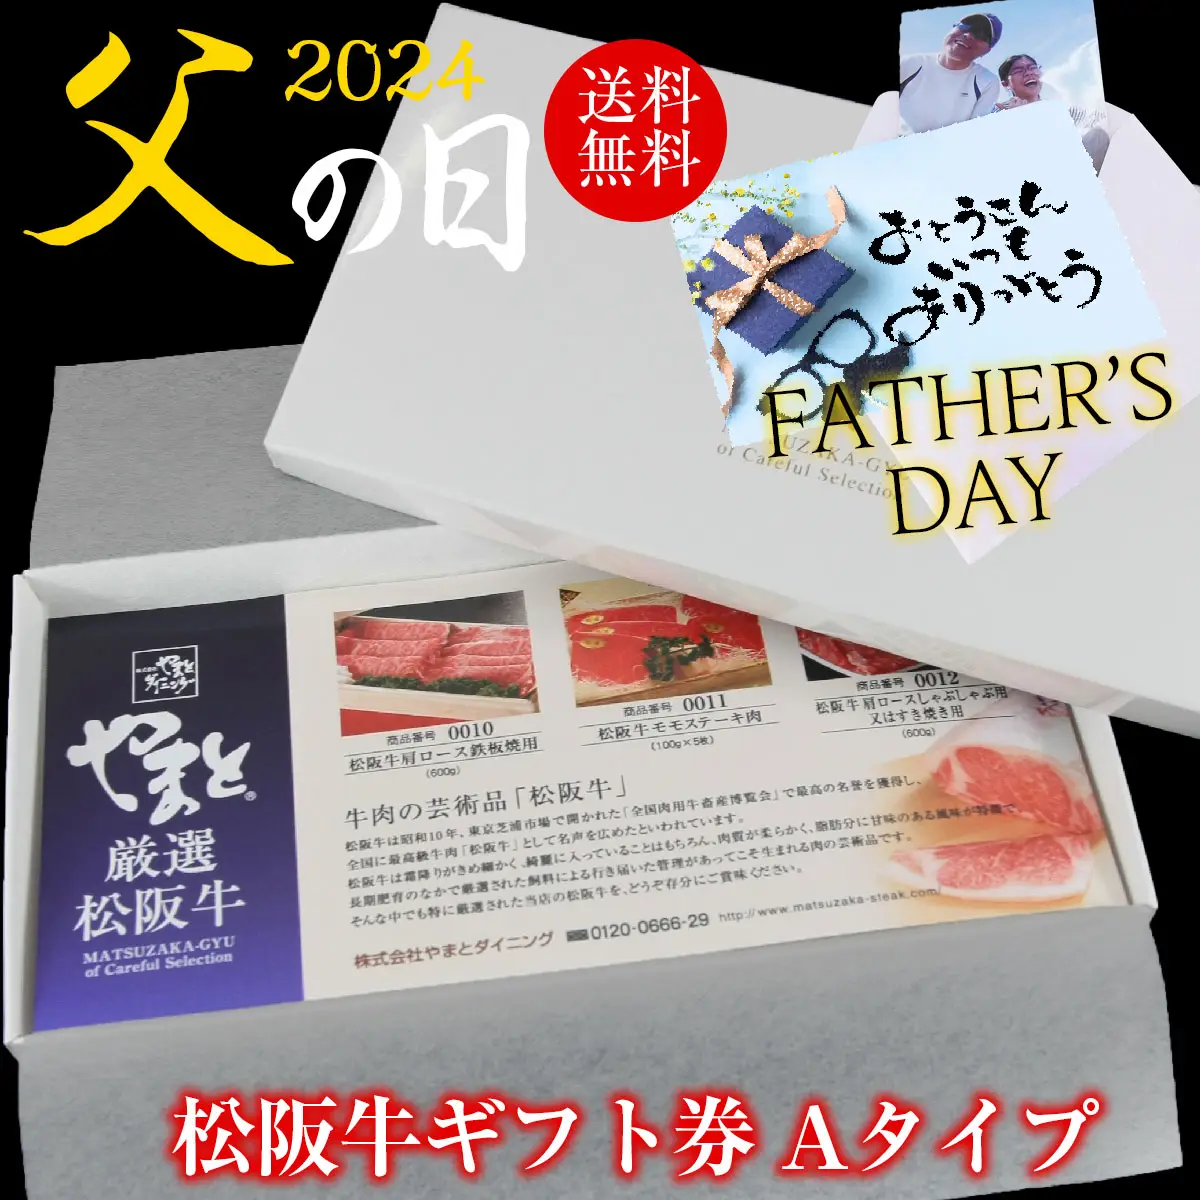 【父の日】松阪牛お肉のギフト券Aタイプ